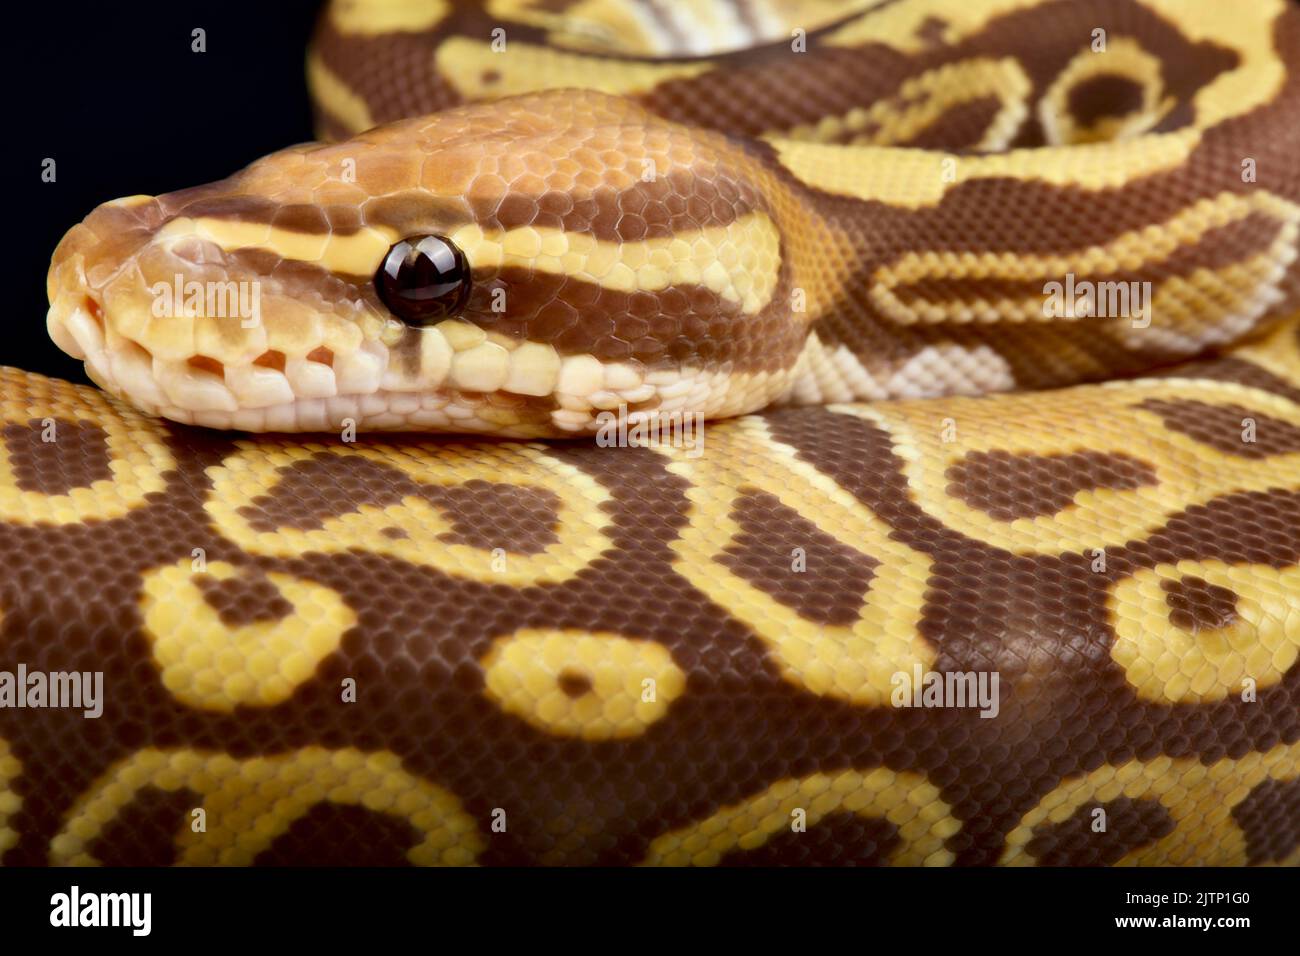 Le python de balle (Python regius) est le serpent d'animal de compagnie le plus populaire au monde. Il est élevé dans une grande variété de couleurs. Banque D'Images